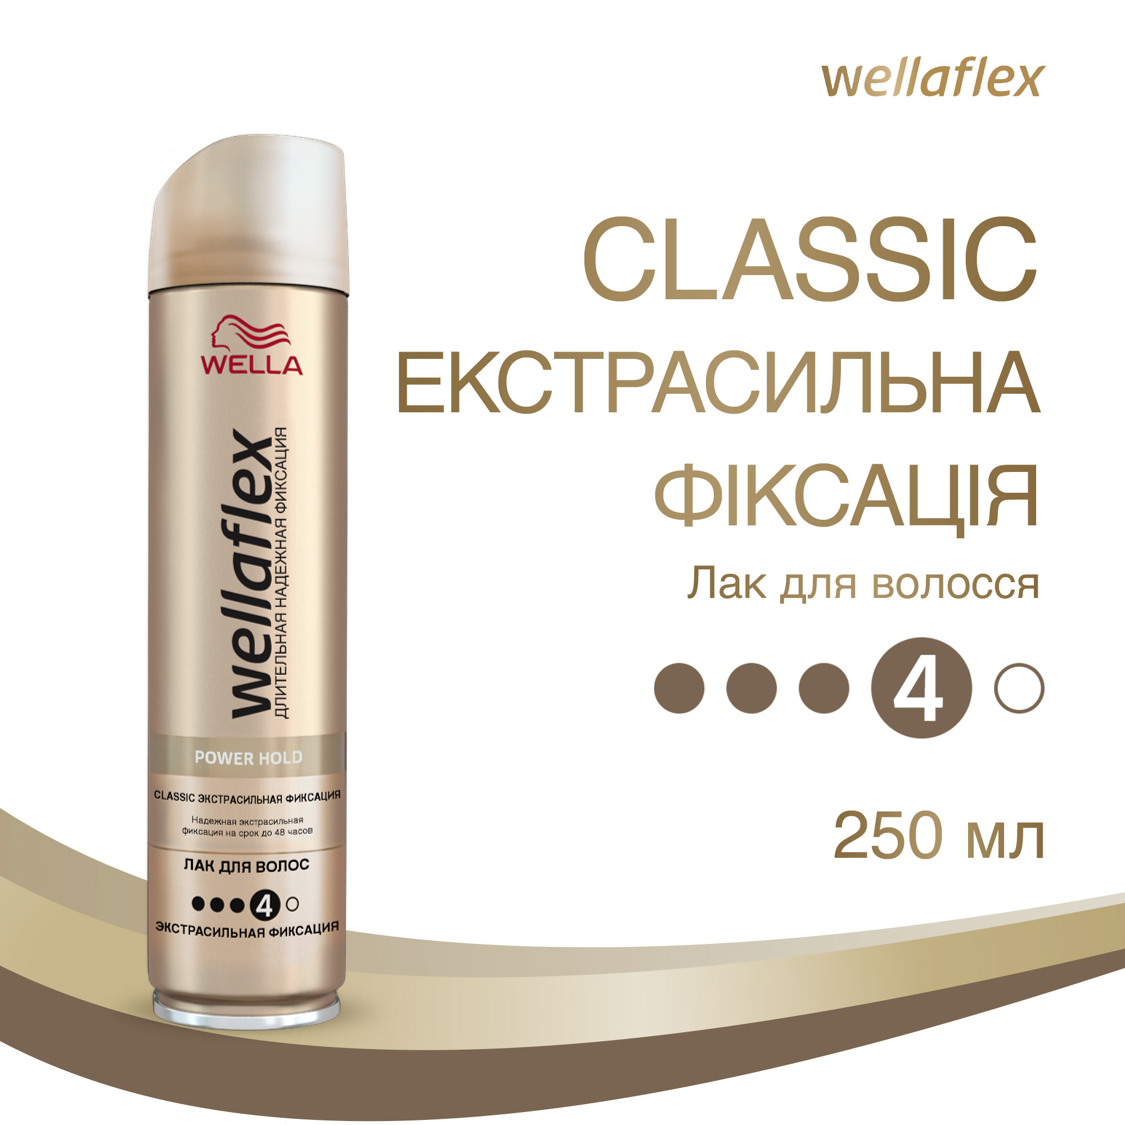 Лак для волосся Wellaflex Classic екстрасильна фіксація, 250 мл - фото 2